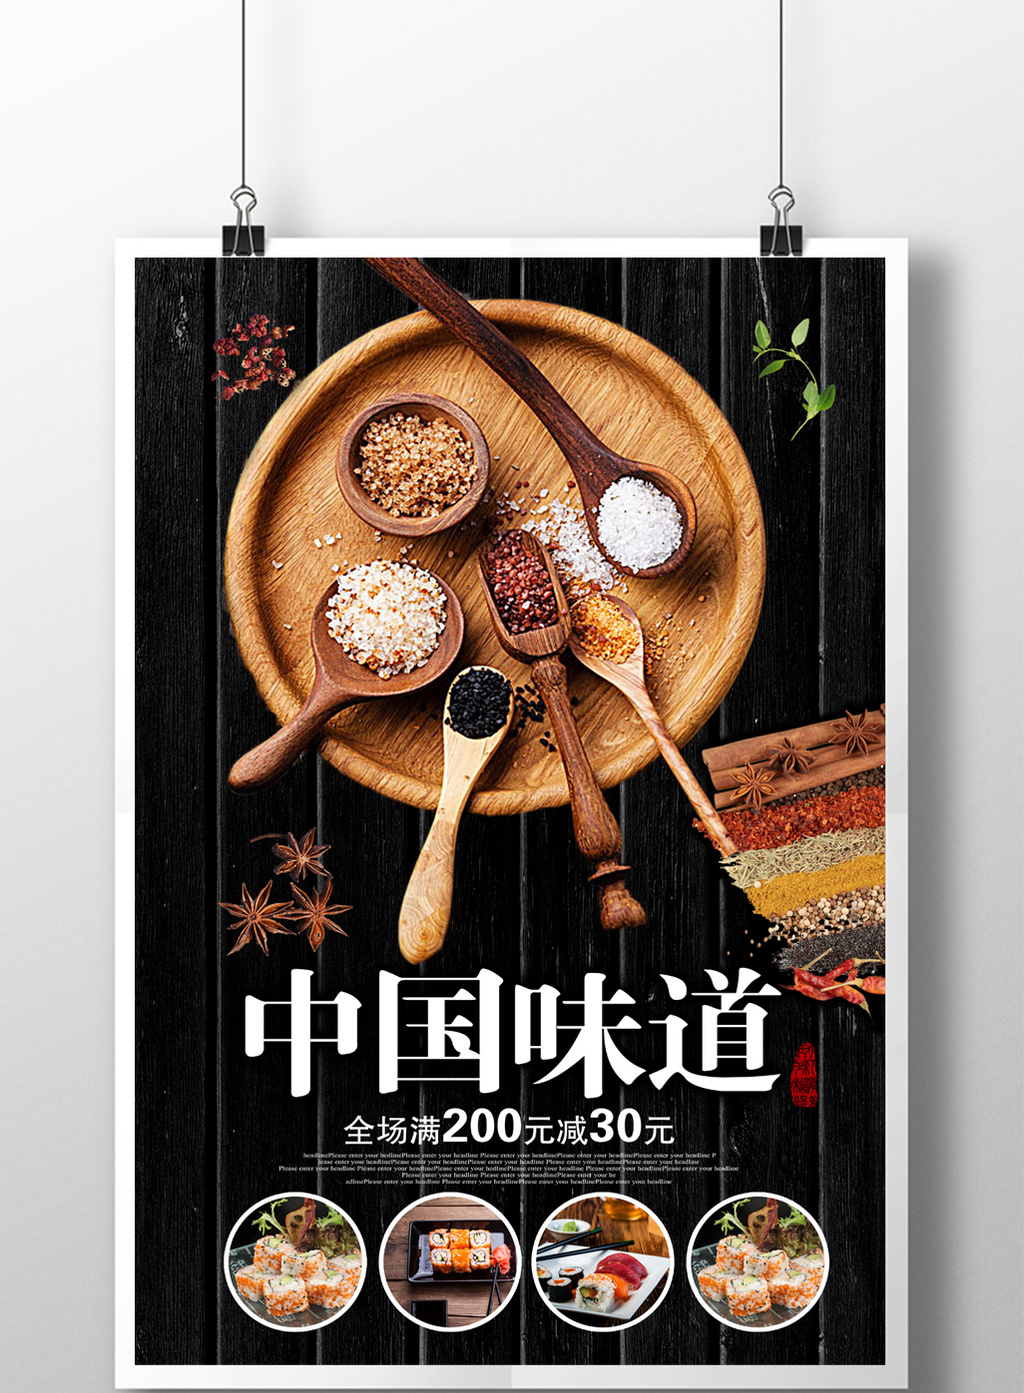 包图网提供精美好看的中国味道调料海报素材免费下载,本次作品主题是